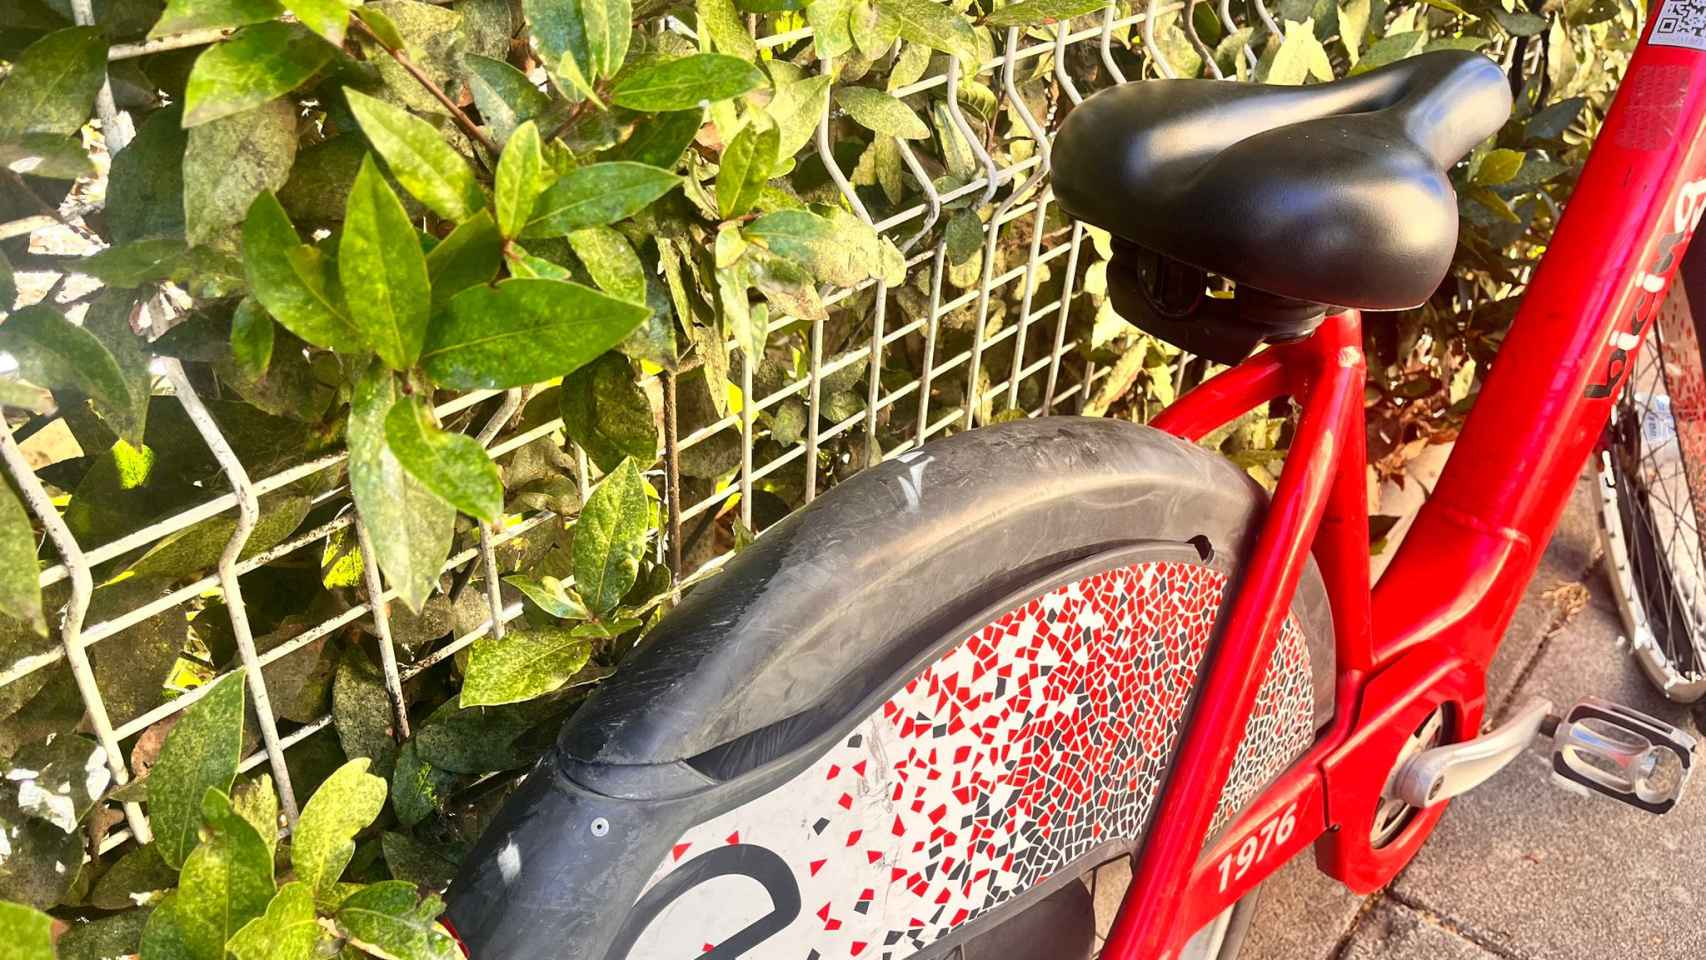 Las ruedas traseras del Bicing donde se sitúan las baterías de las bicicletas